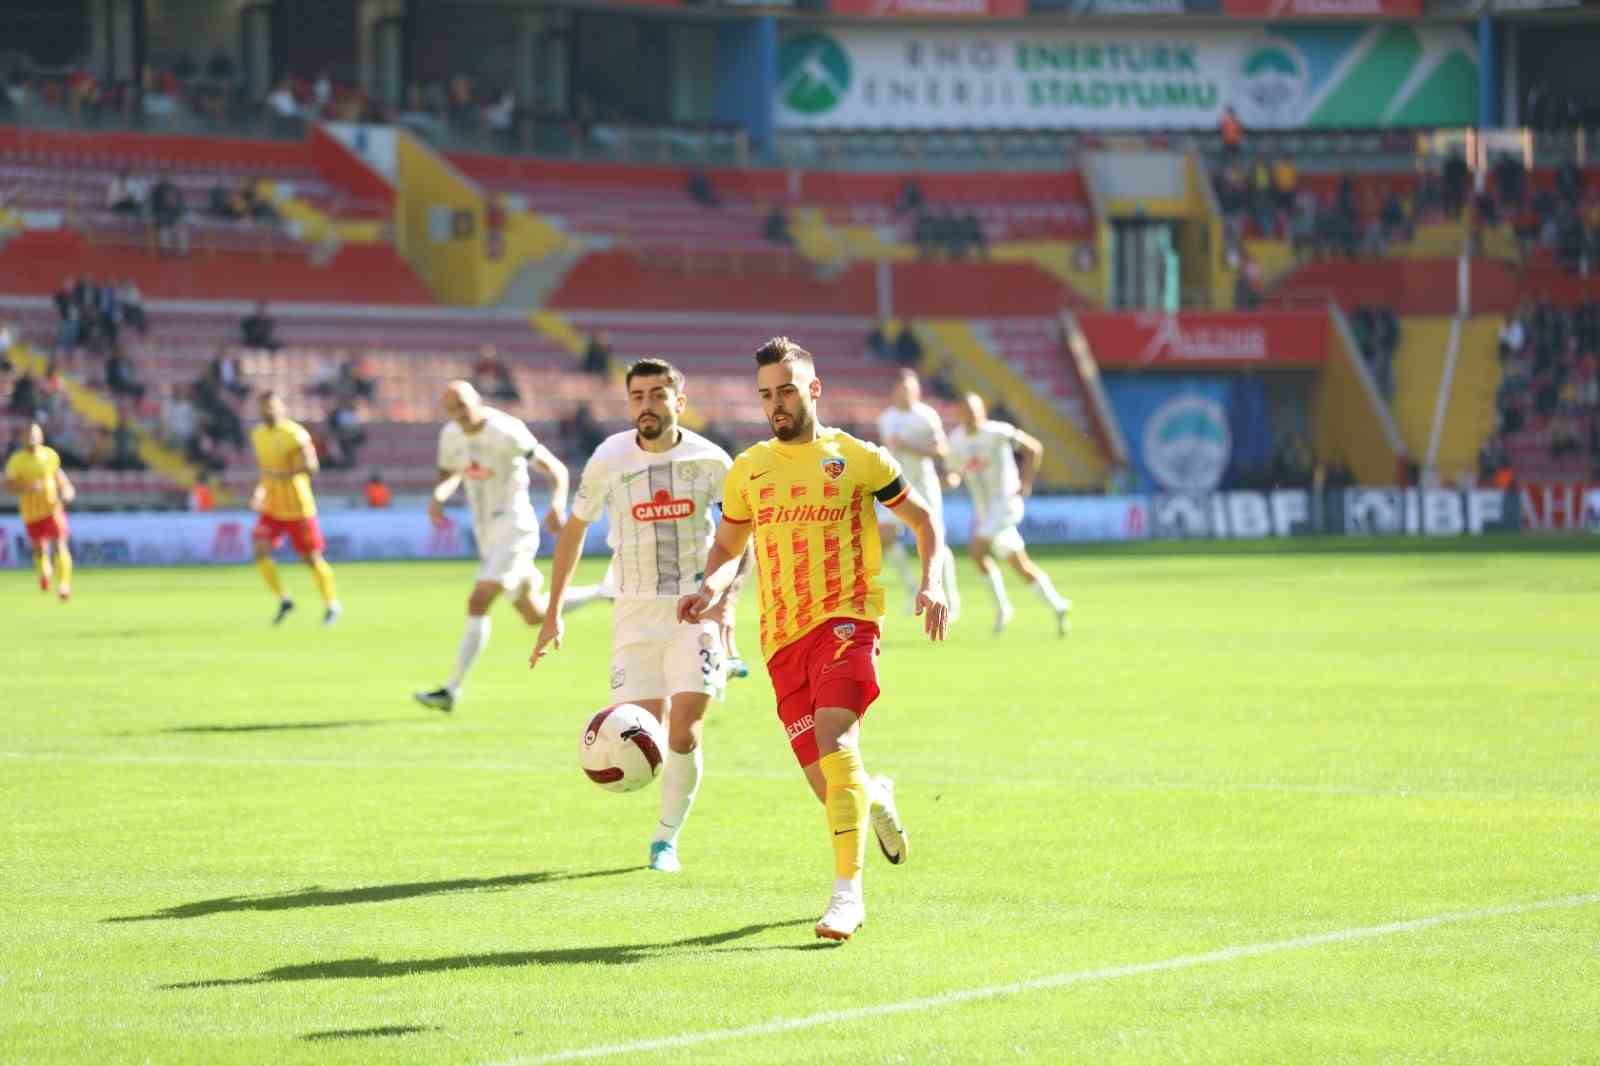 Trendyol Süper Lig: Kayserispor: 0 - Çaykur Rizespor: 0 (Maç devam ediyor)